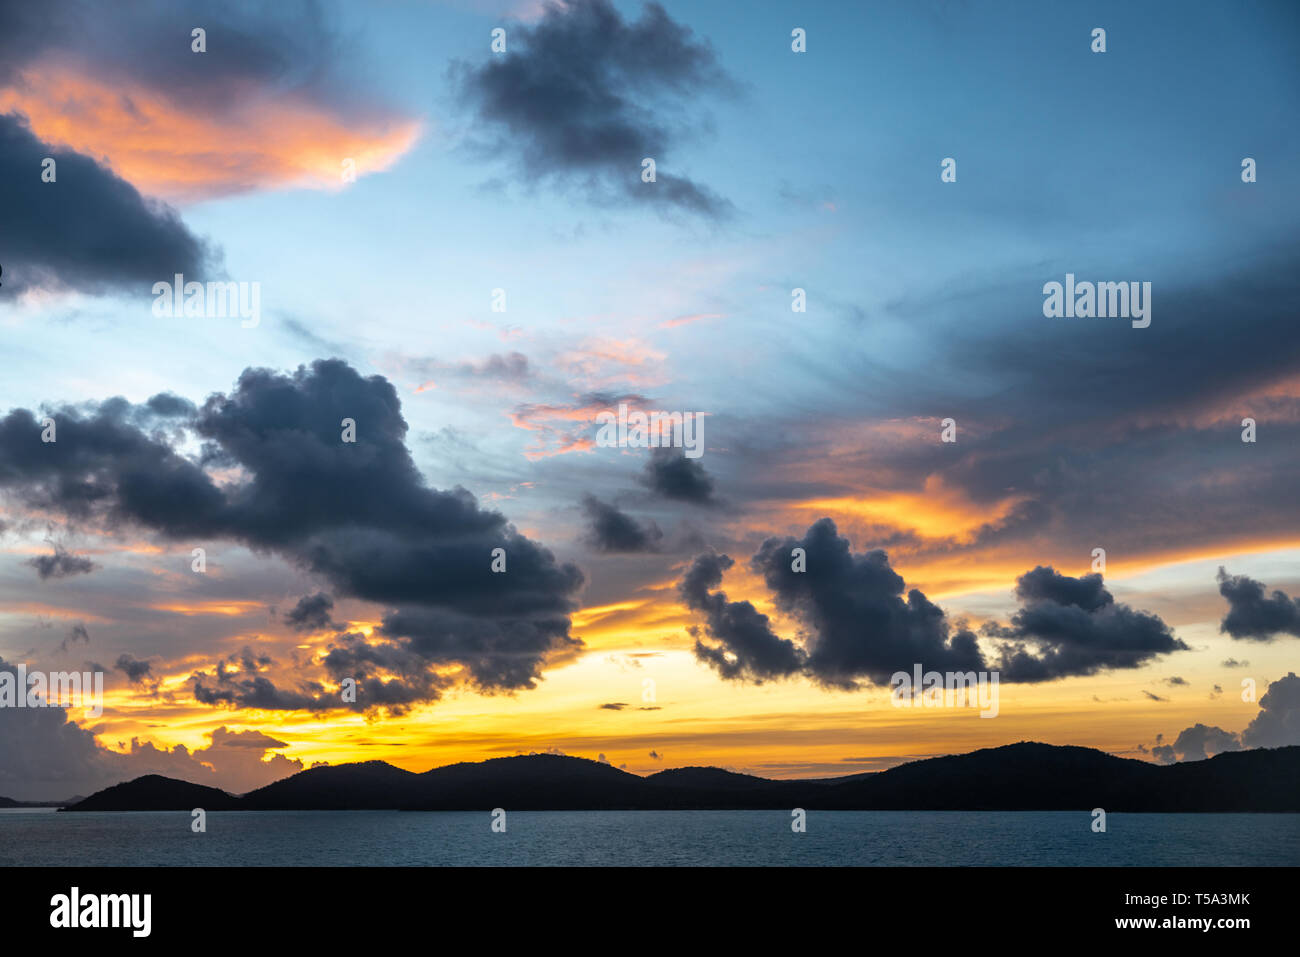 La isla Thursday, Australia - 20 de febrero de 2019: Pre-Salida del sol sobre el archipiélago de las Islas del Estrecho de Torres muestra nubes azul oscuro en amarillo y rojo Foto de stock